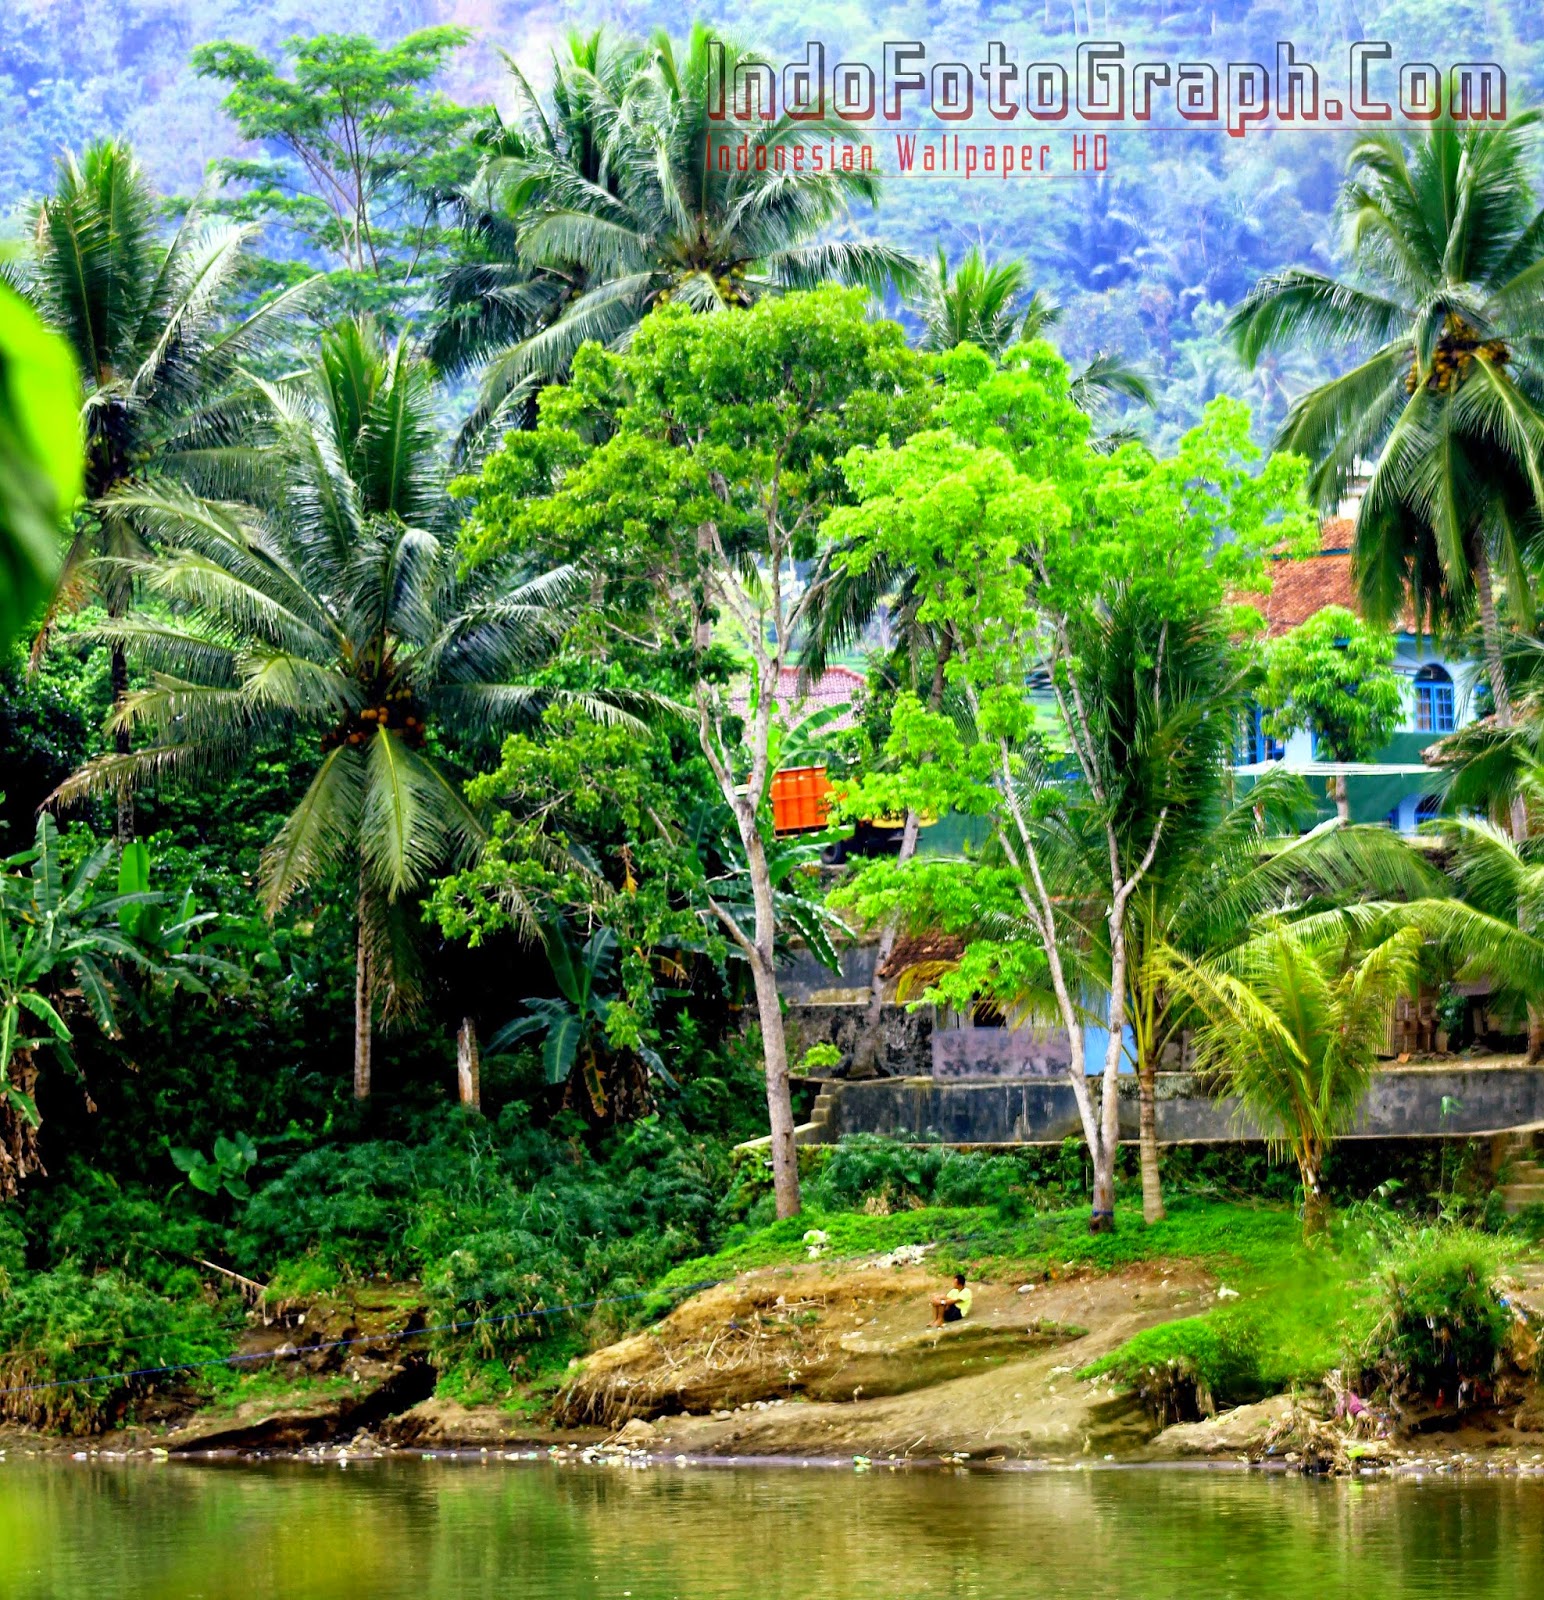 wallpaper pemandangan indah,natural landscape,vegetation,nature,tree,jungle